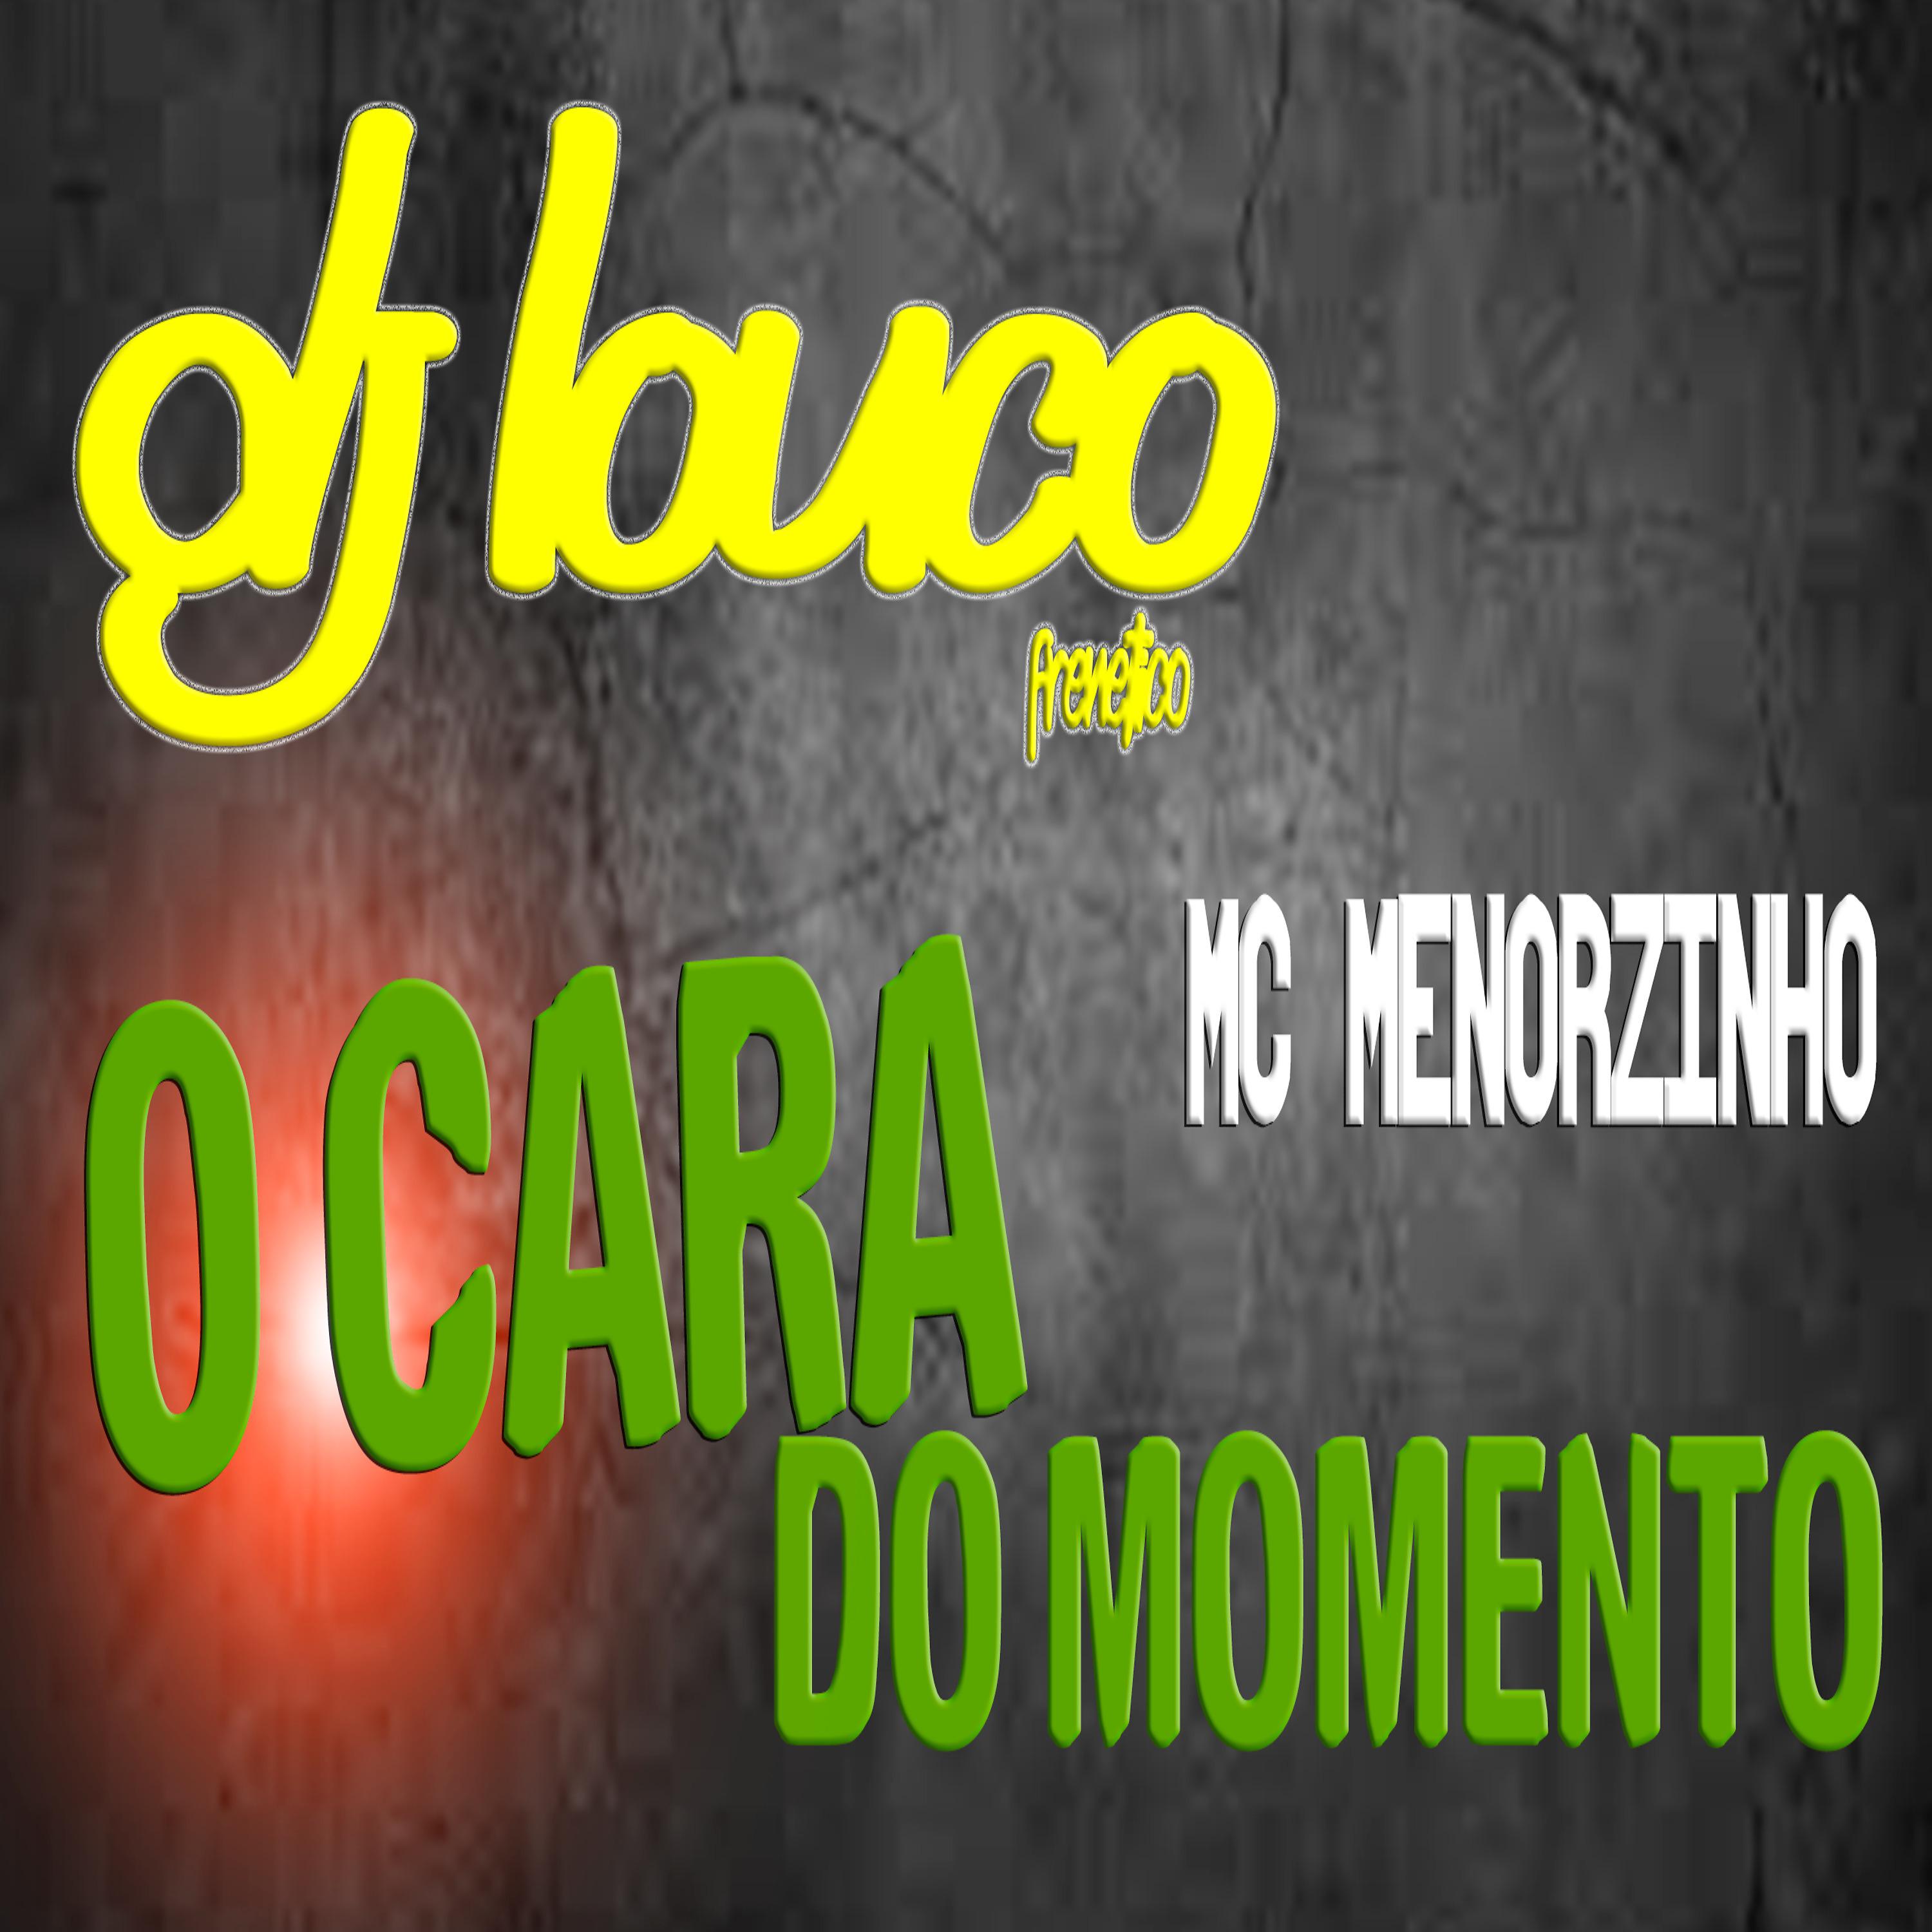 Постер альбома O Cara do Momento